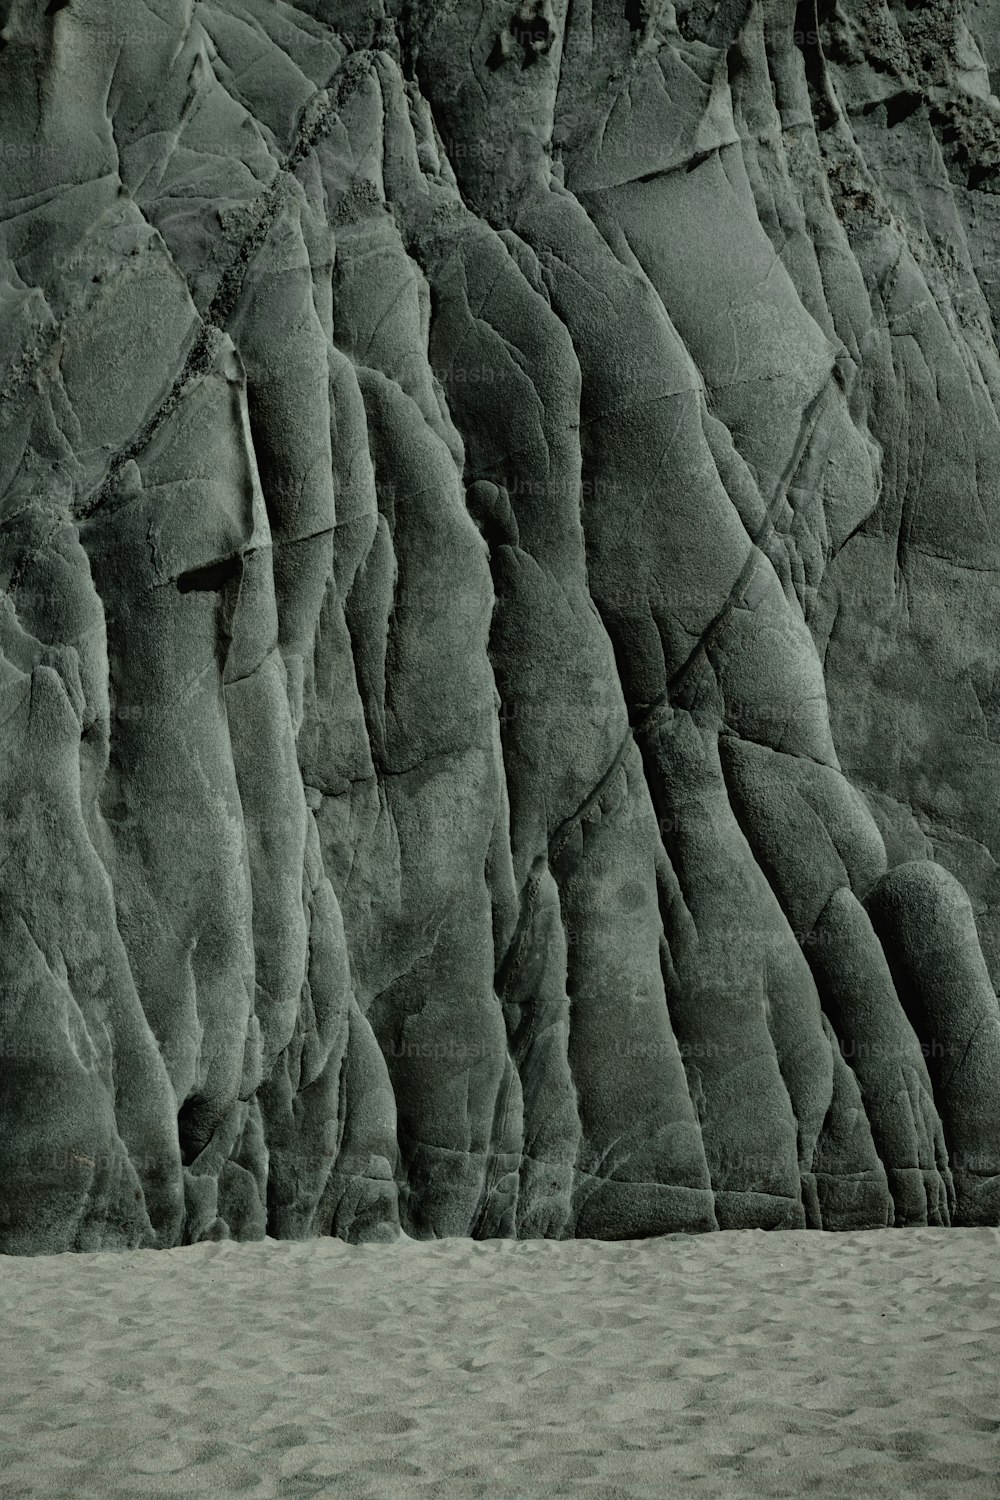 Una foto in bianco e nero di una parete rocciosa